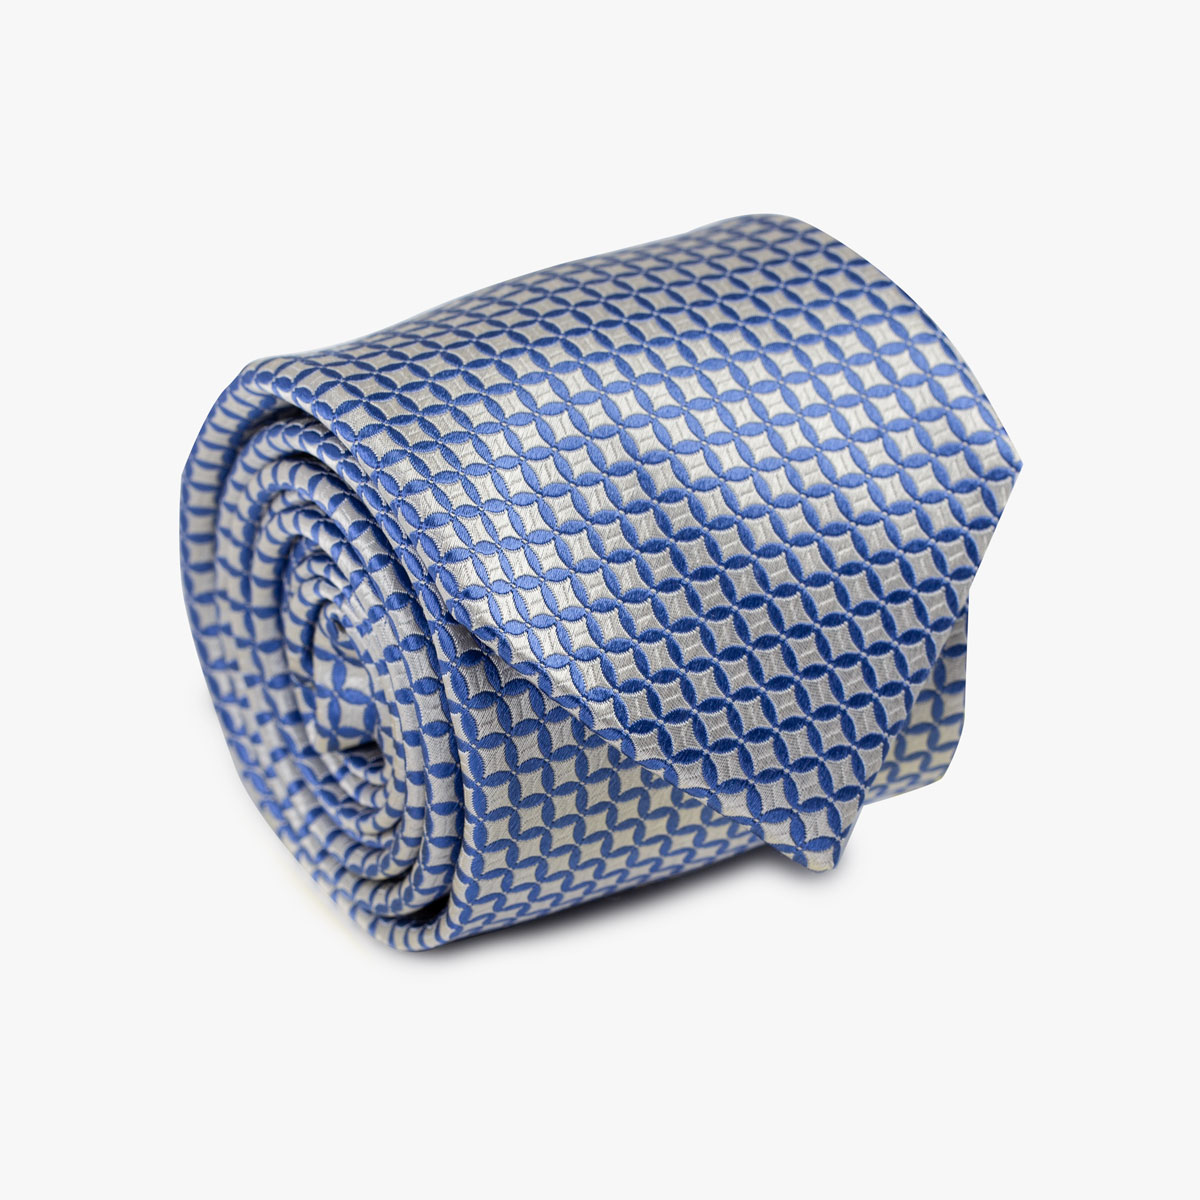 Aufgerollte Krawatte mit geometrischem Muster in hellblau grau